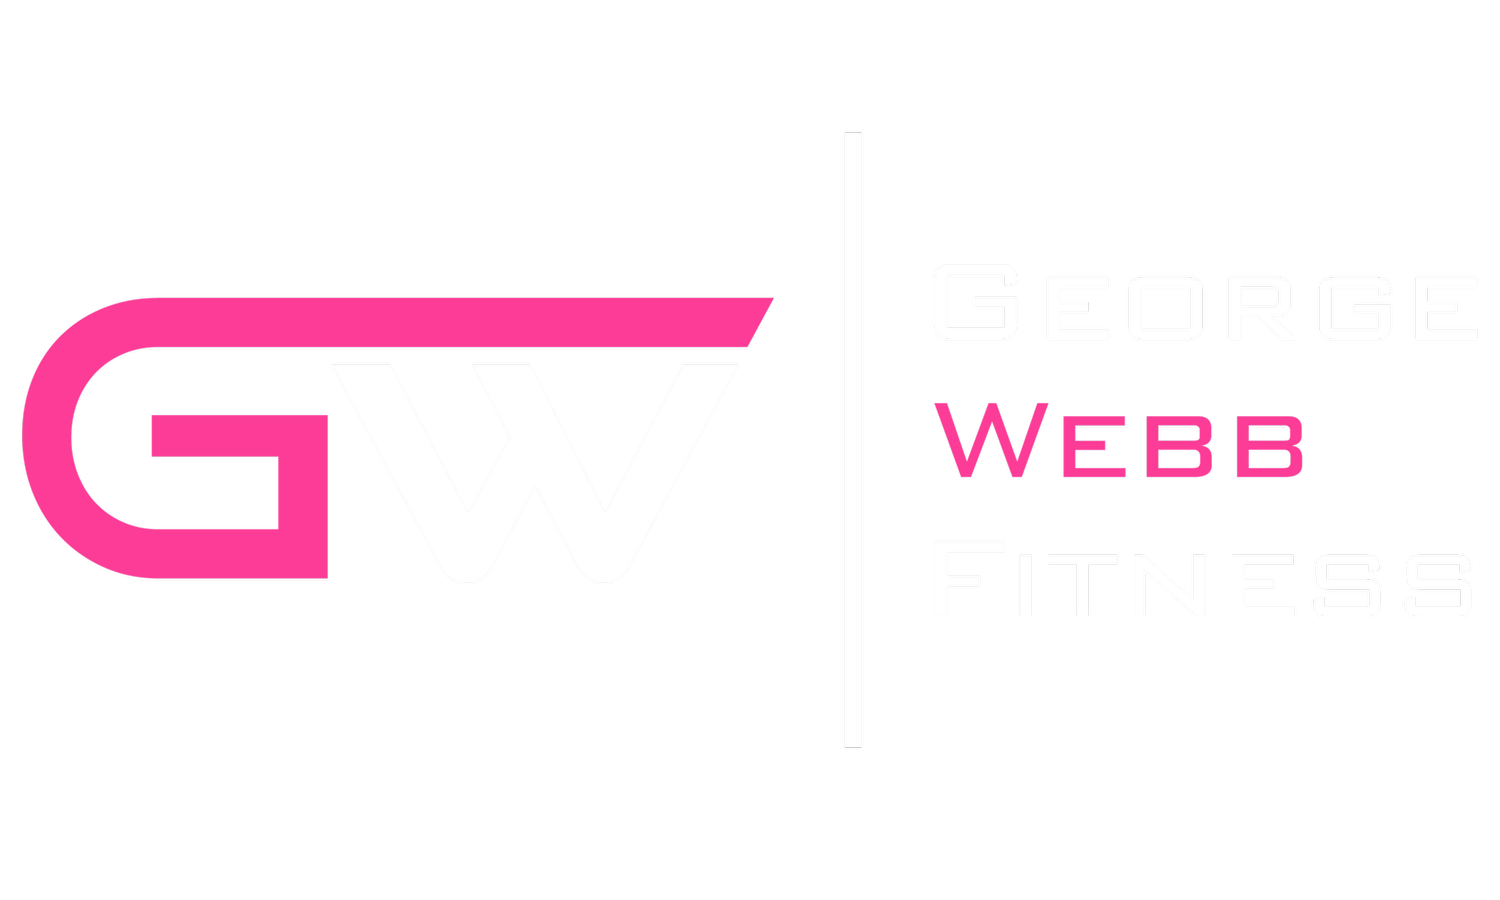 George Webb Fitness